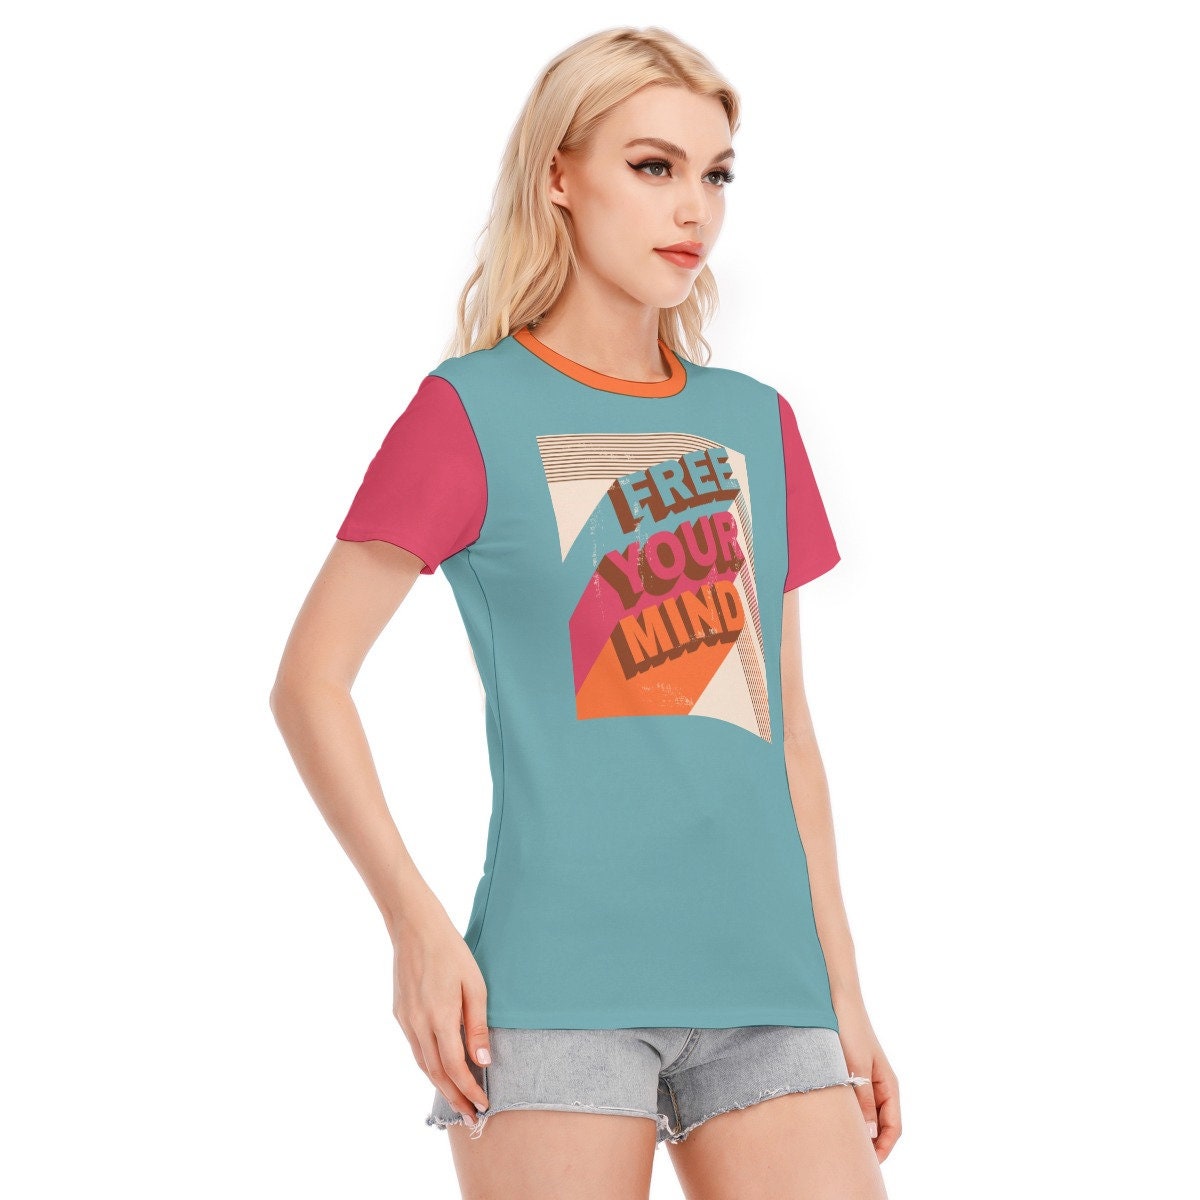 Retro T-shirt, Words Tshirts, Vintage Words Tshirt, Blue Words T-shirt, Hippie Tshirt Women, Vintage Style Teal T-shirt, Unique Tshirt